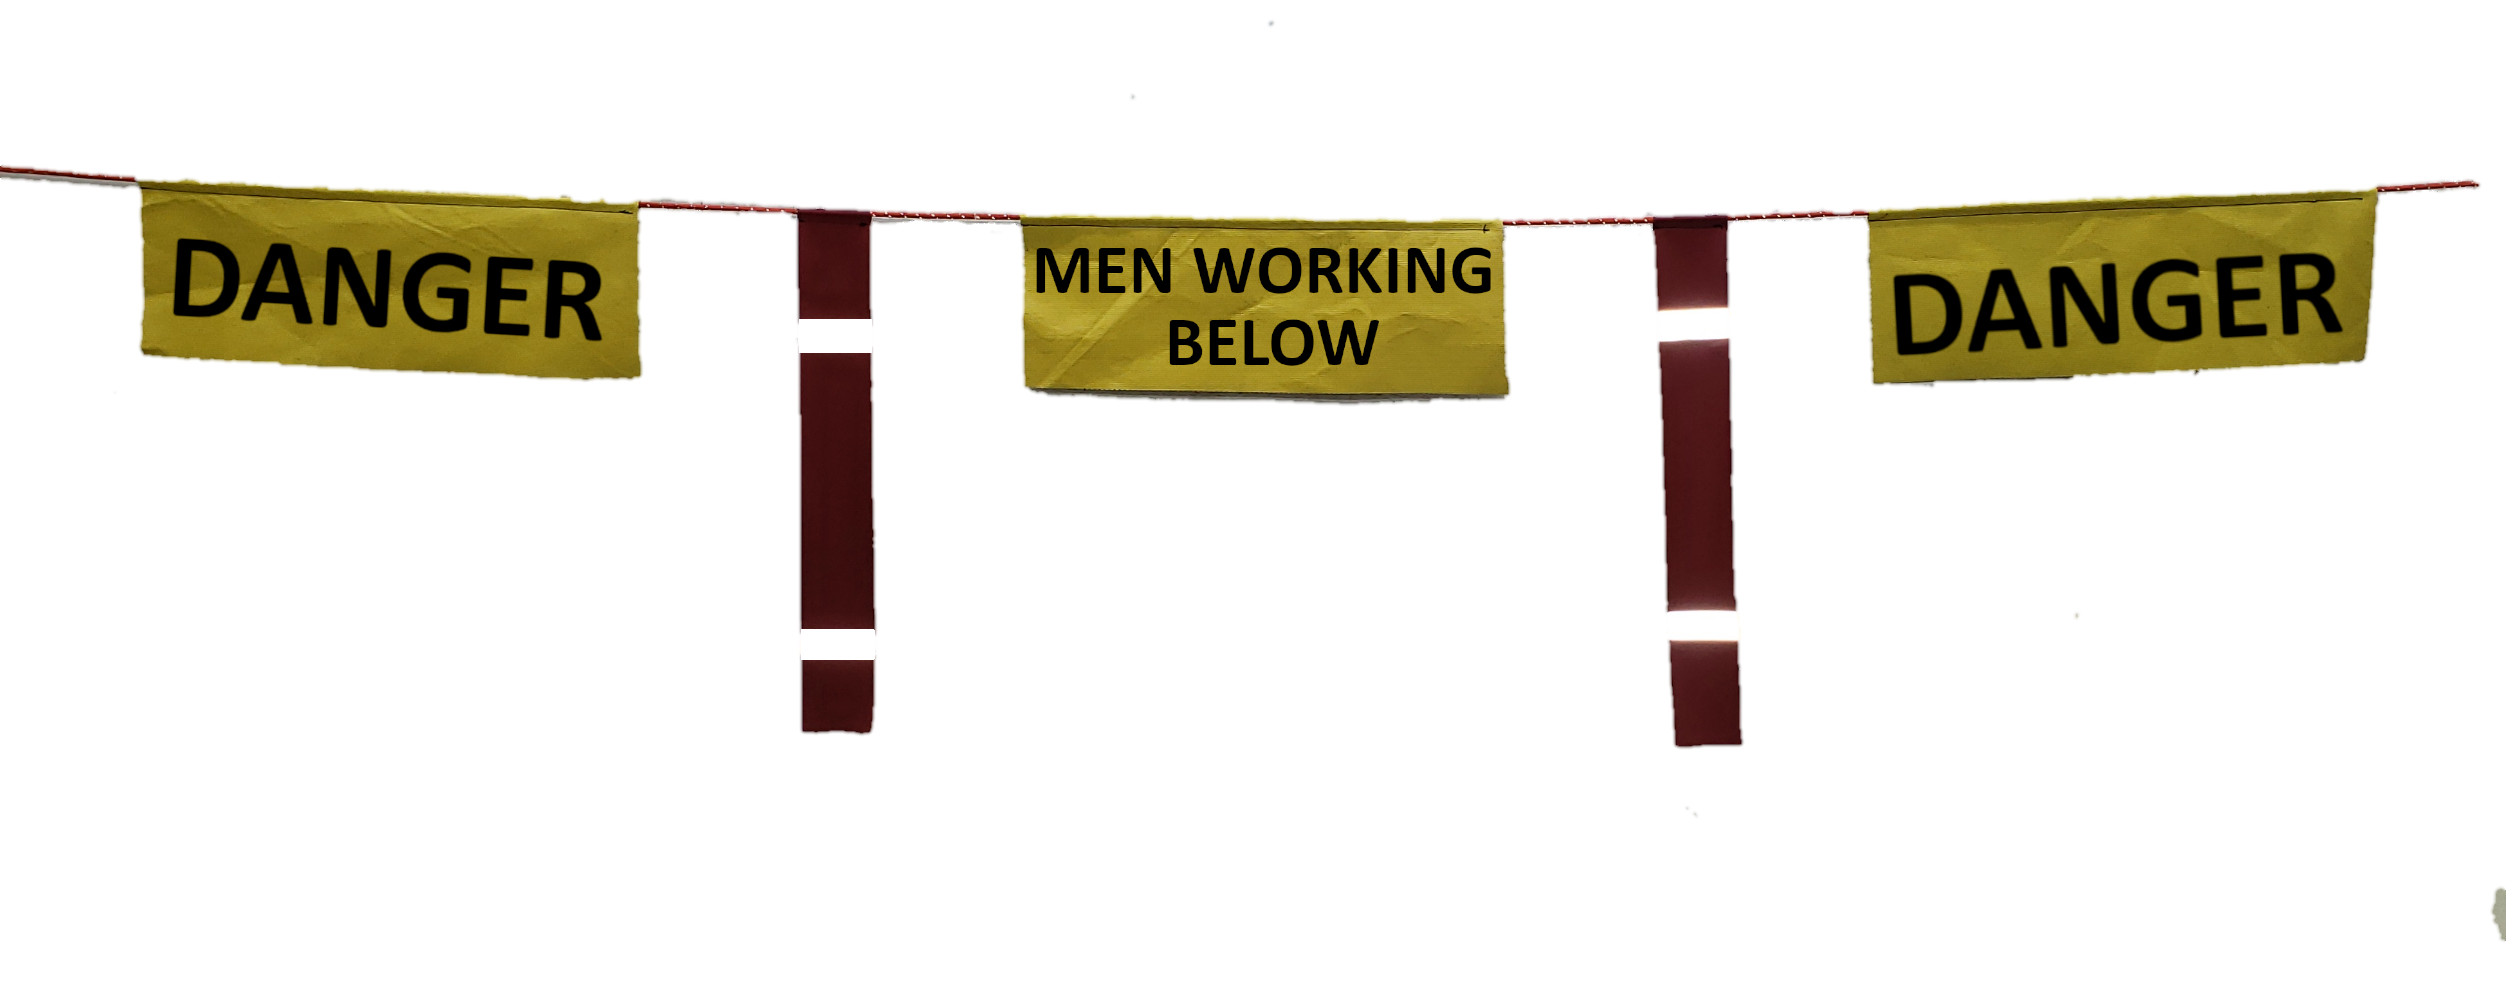 MEN WORKING BELOW